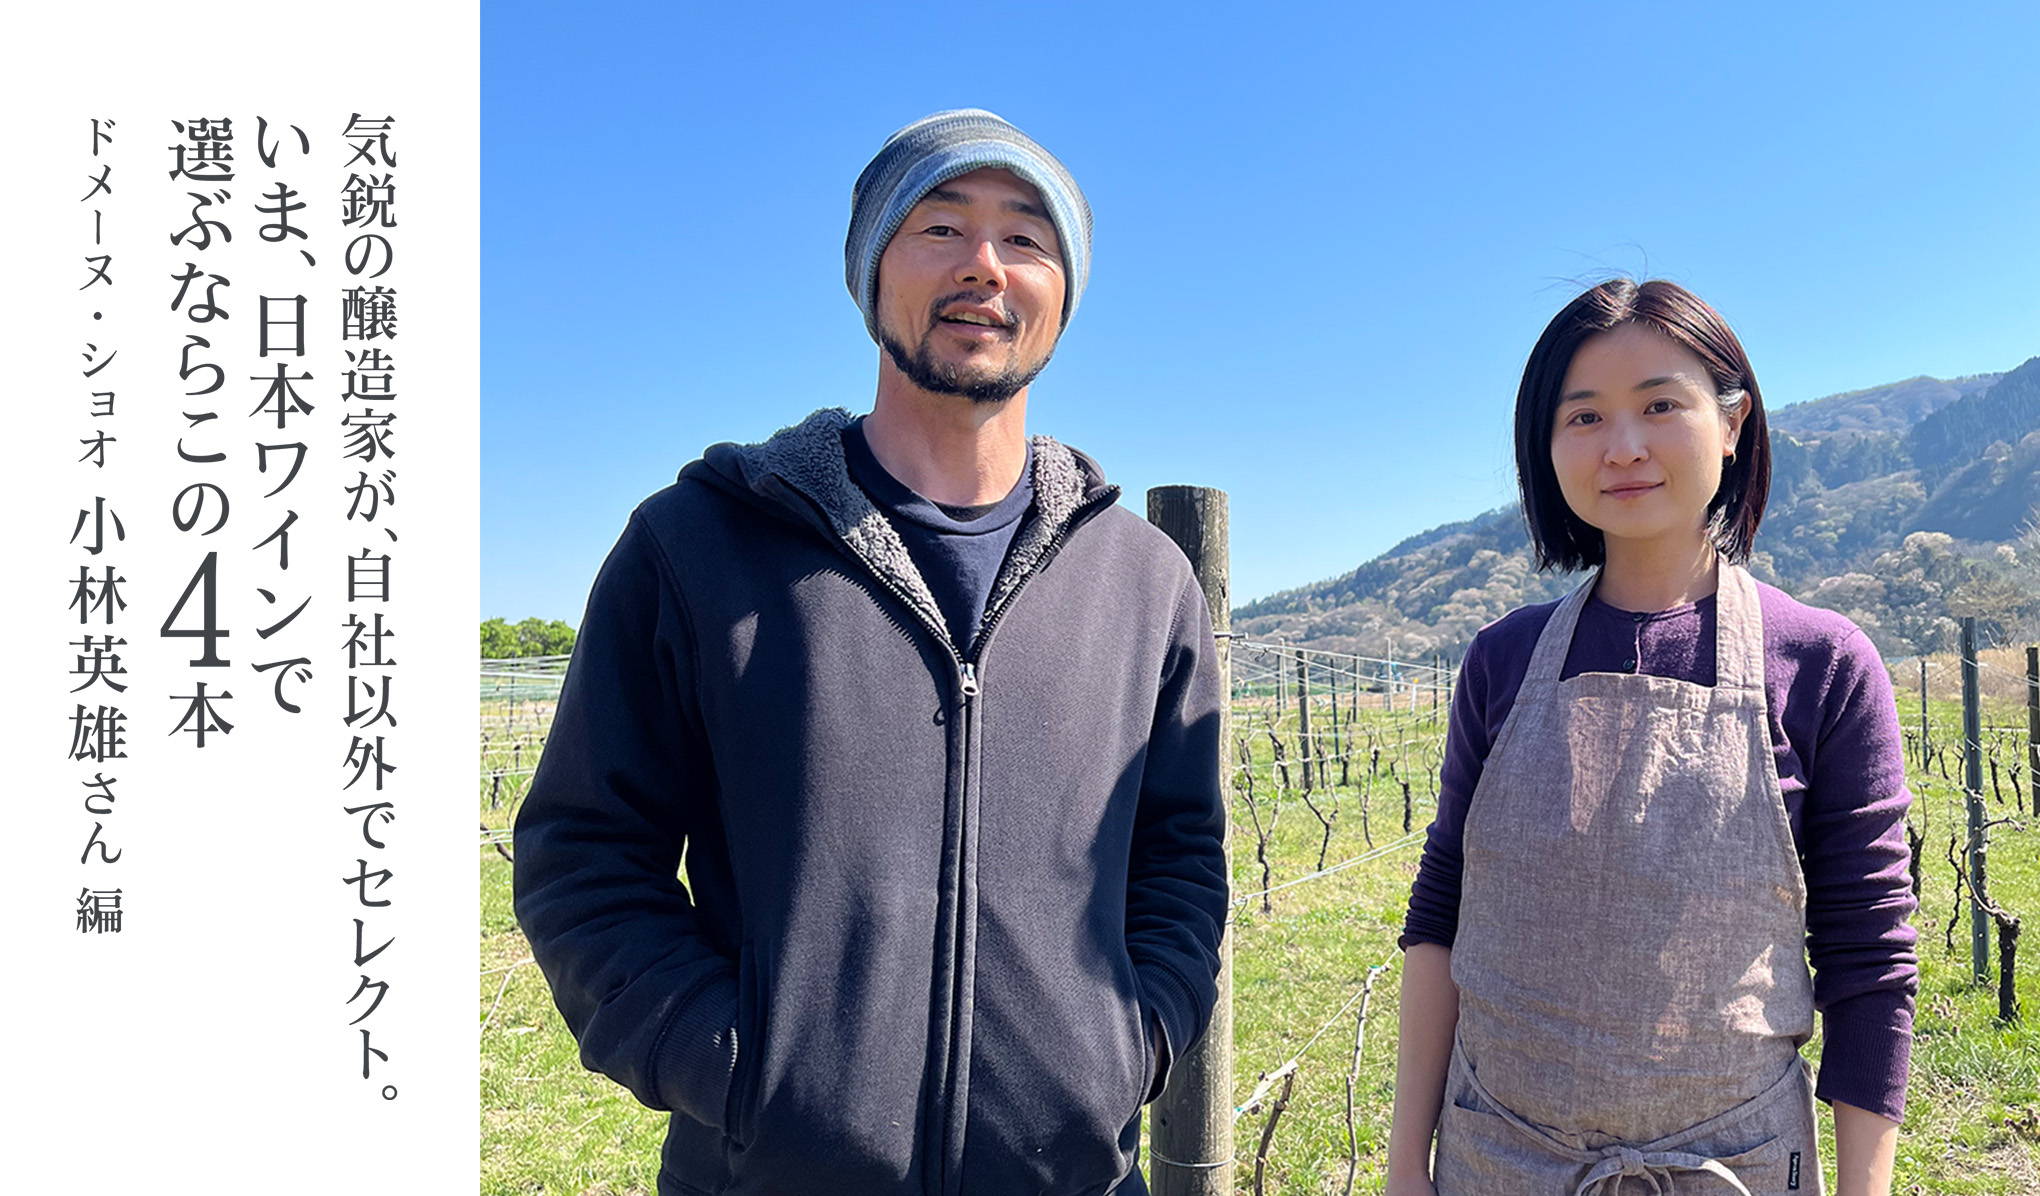 気鋭の醸造家、ドメーヌ・ショオの小林英雄さんが、自社以外でセレクト。いま、日本ワインで選ぶならこの4本